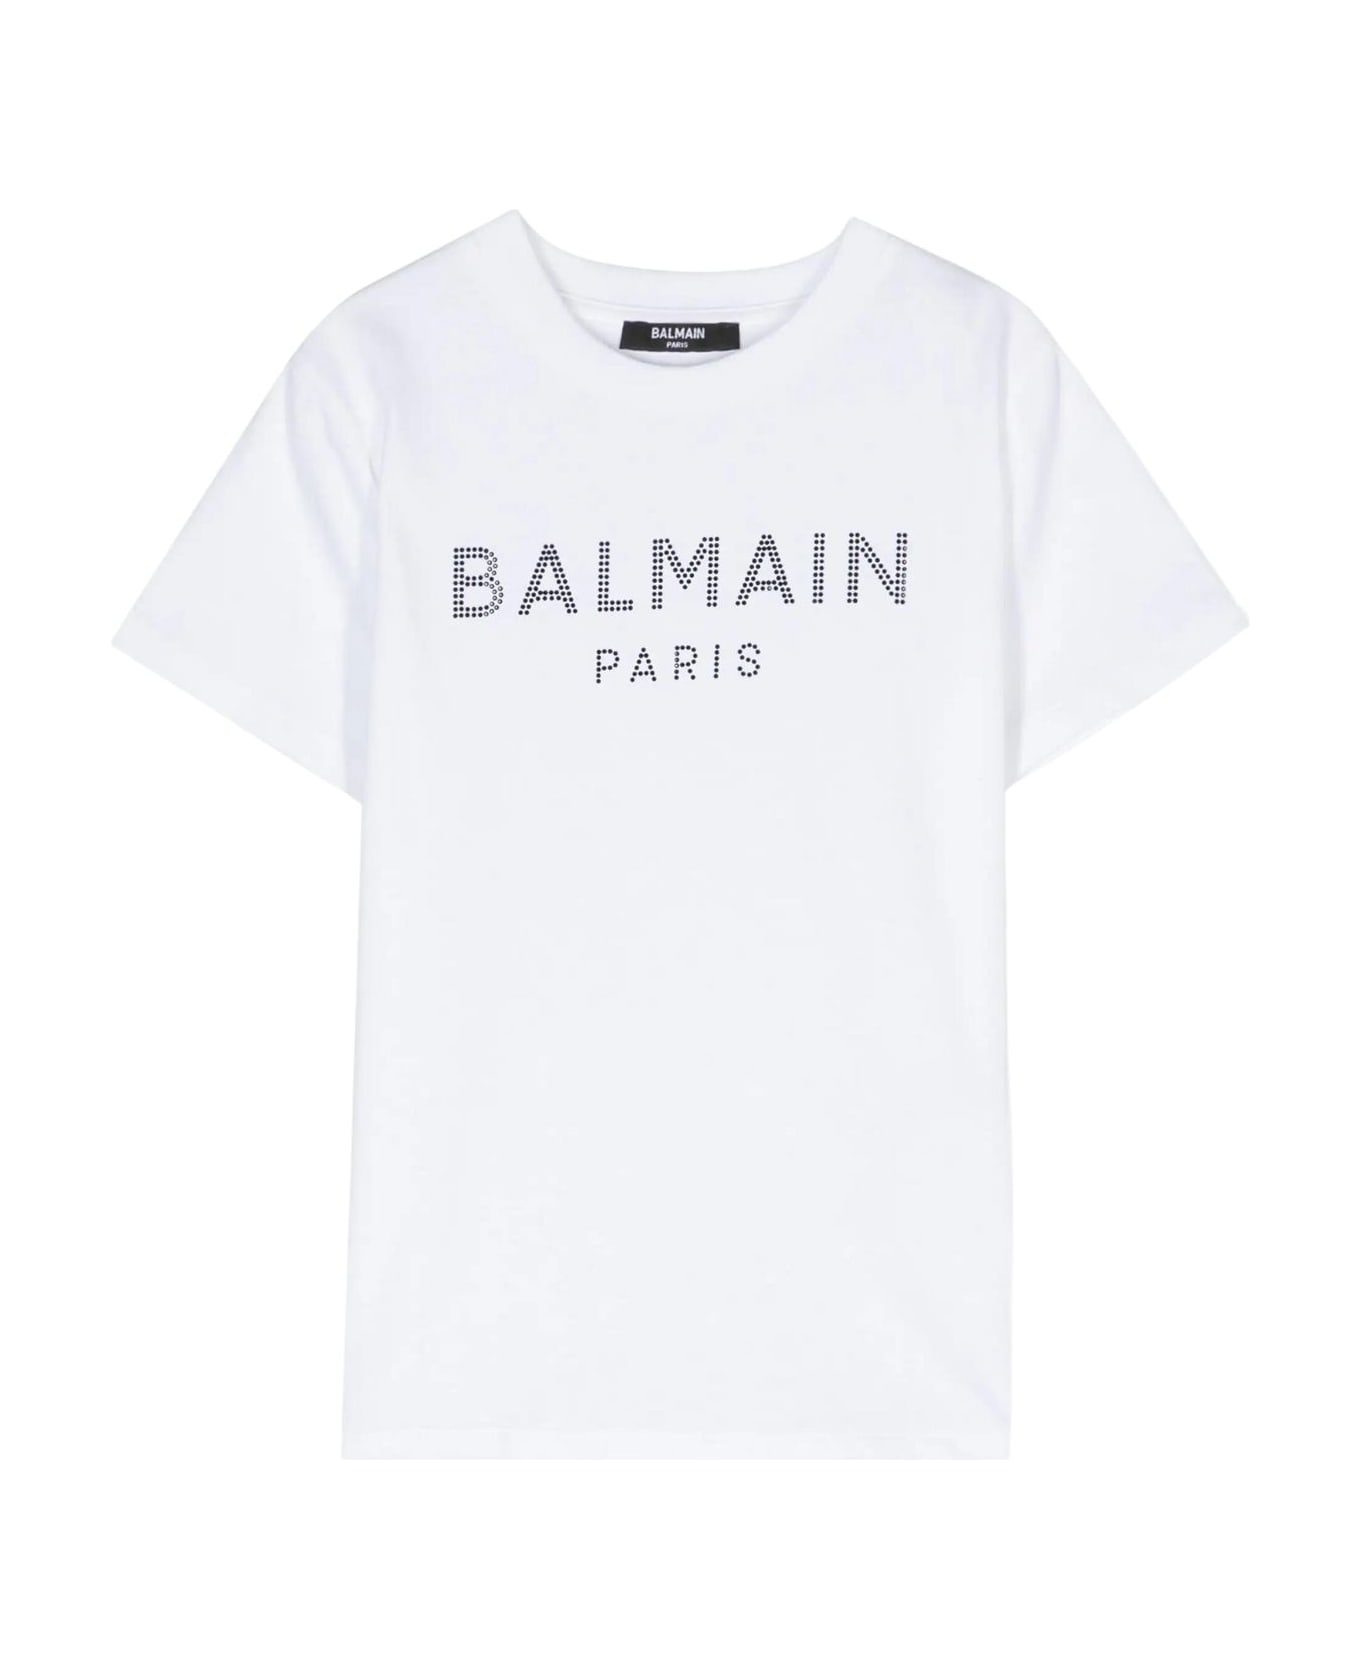 Balmain T Shirt - Ne White Black Tシャツ＆ポロシャツ